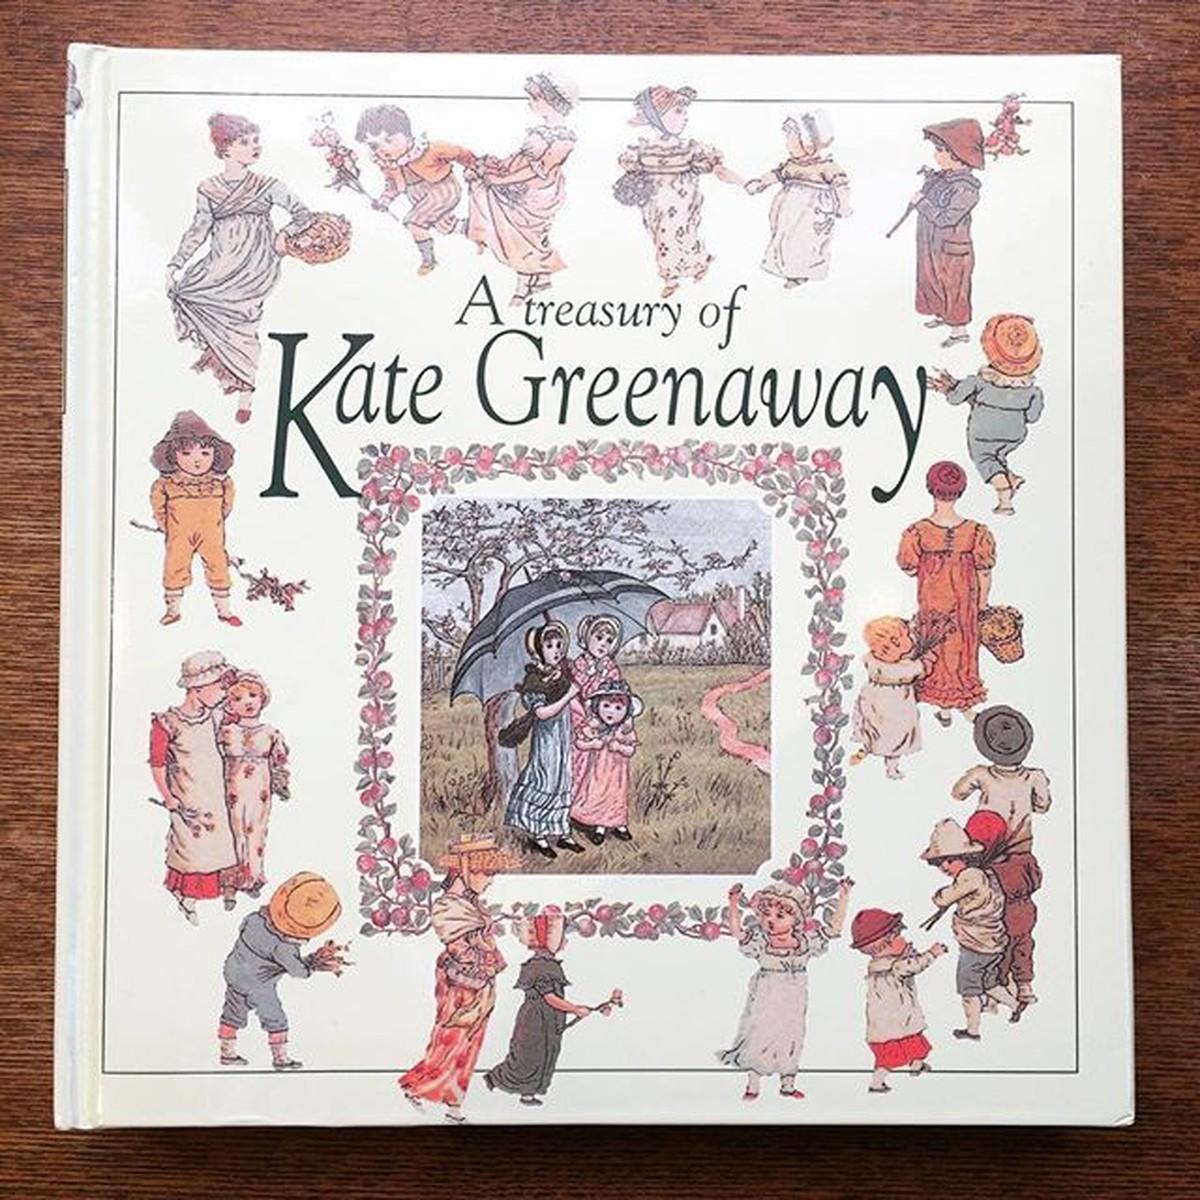 ケイト・グリーナウェイ作品集「A Treasury of Kate Greenaway」 | 古本トロニカ 通販オンラインショップ | 美術書